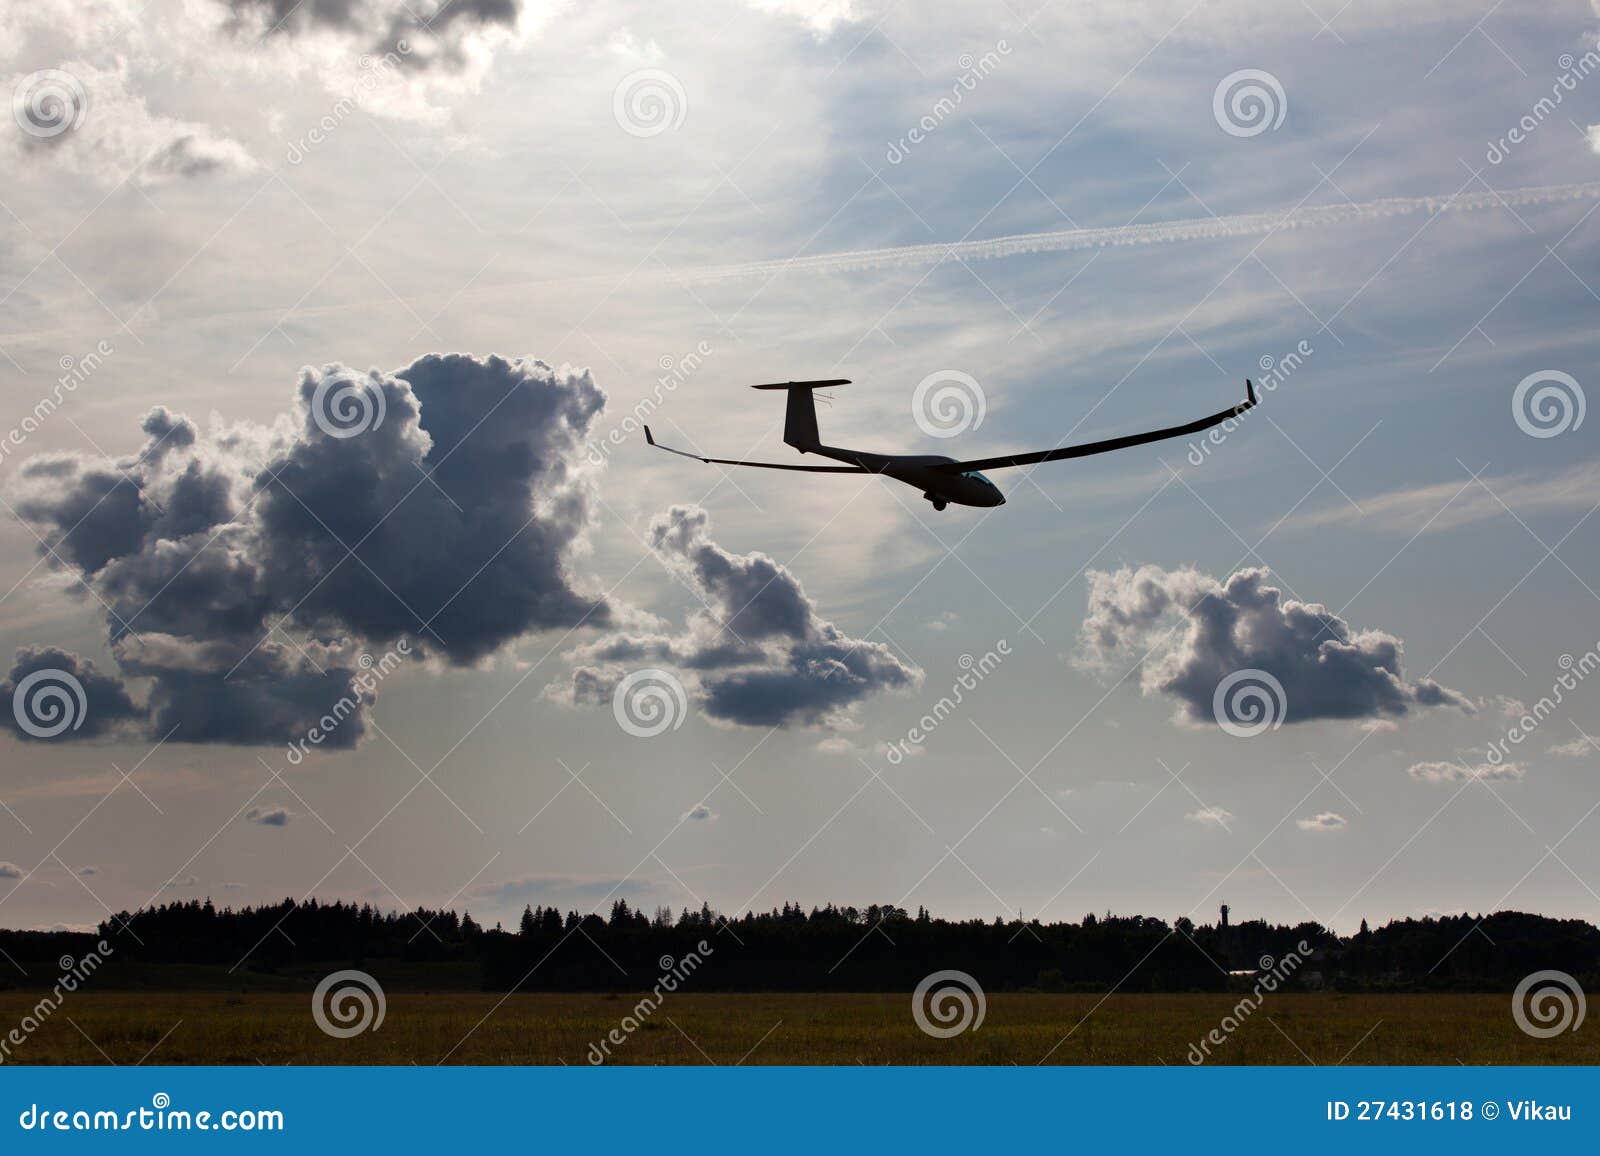 sailplane on final glide